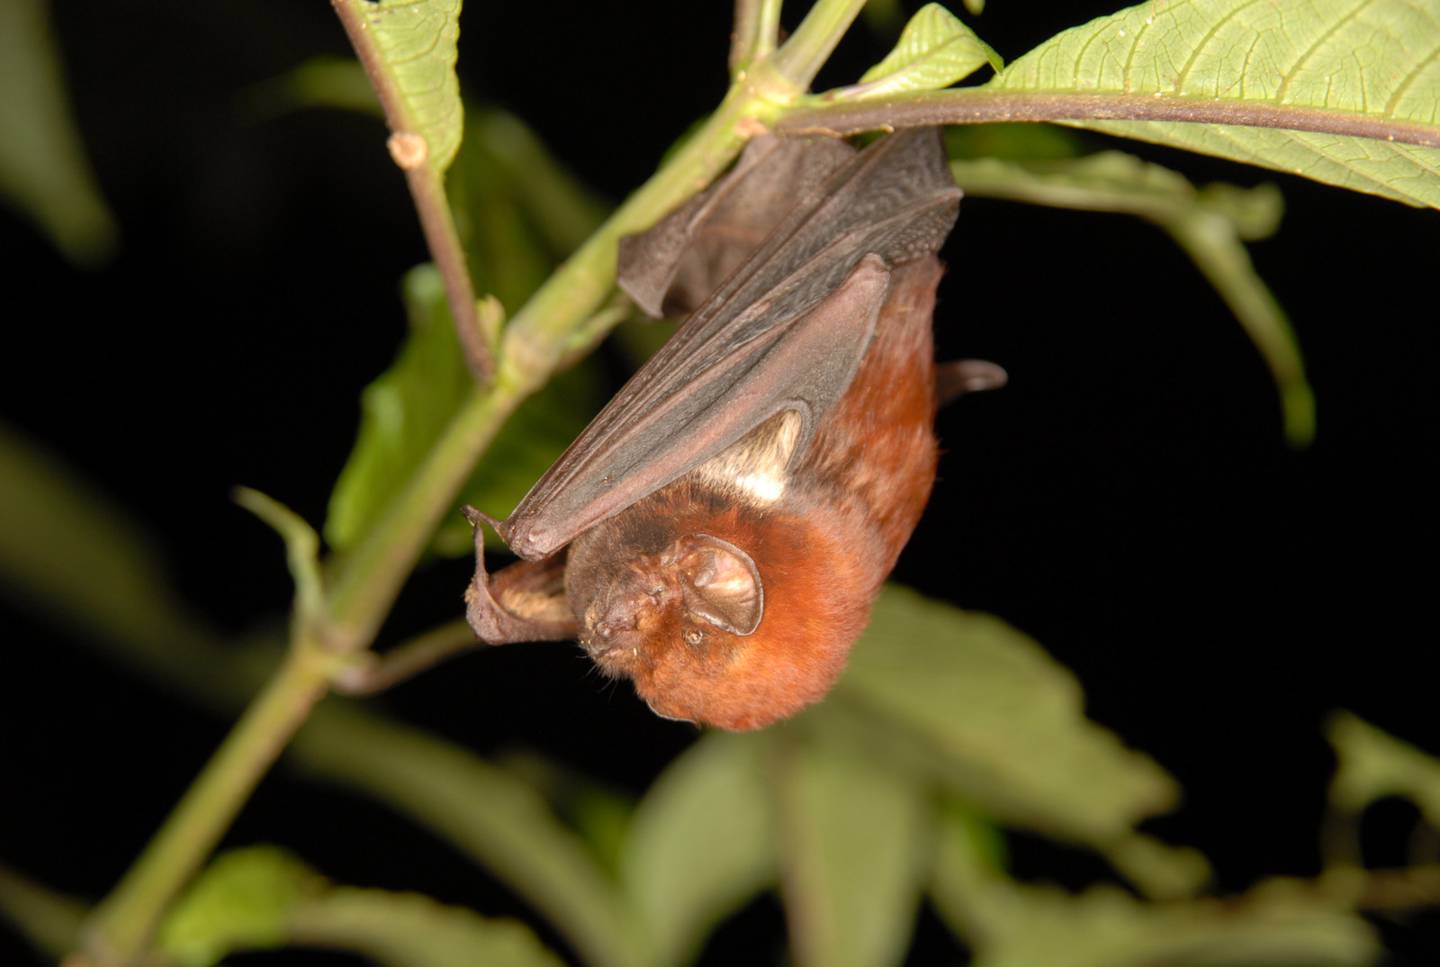 Los murciélagos utilizan sonidos de alta frecuencia  (ultrasonidos) imperceptibles para el oido humano. En la foto, la especie "Lasiurus castaneus".

Fotografía cortesía de Gloriana Chaverri/ UCR